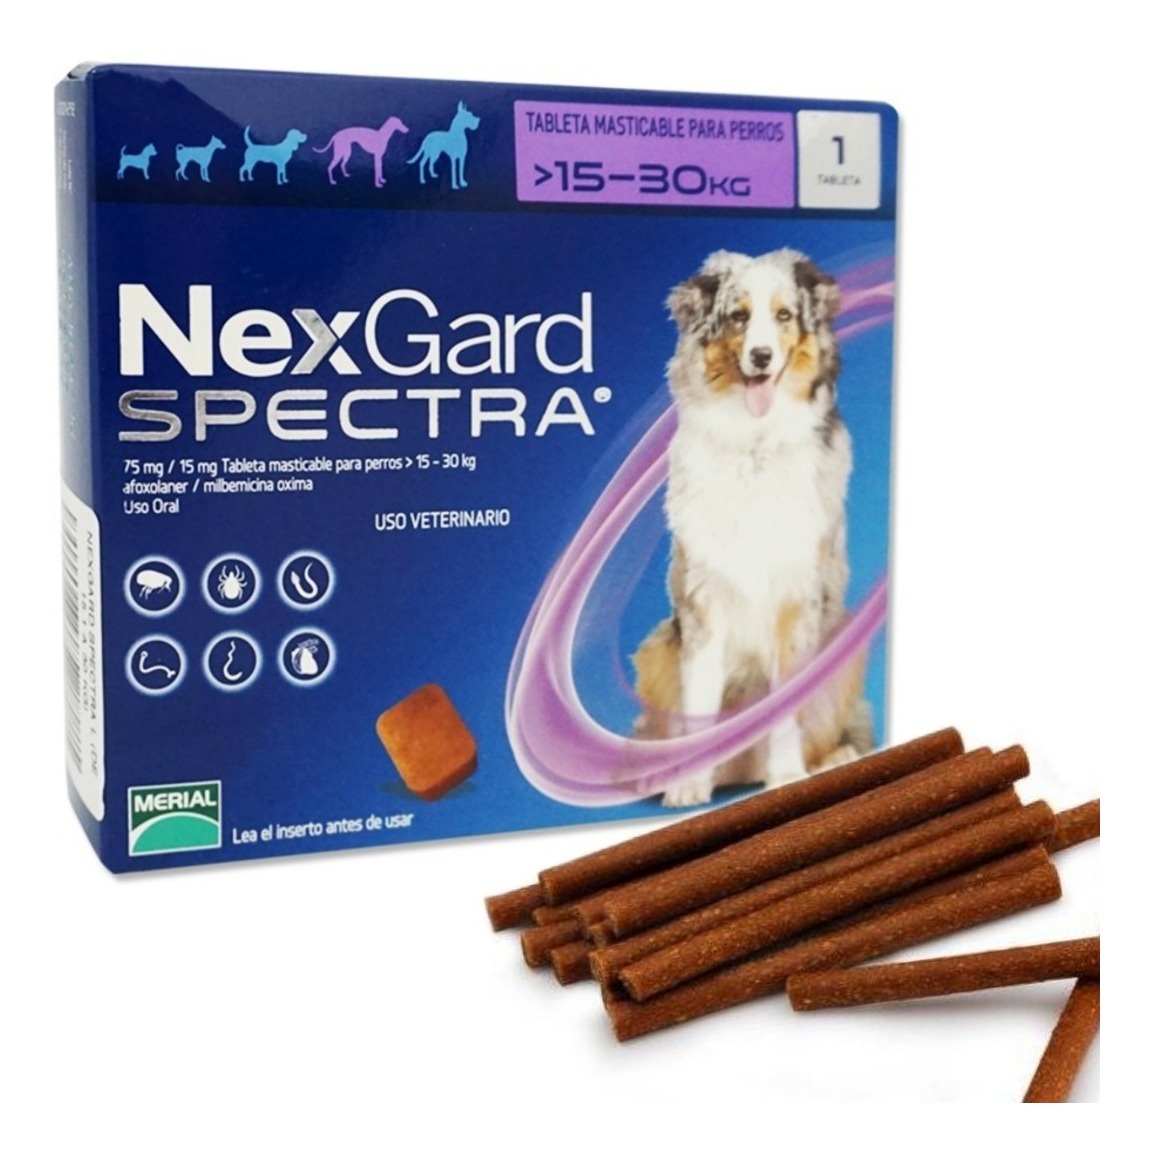 Нексгард спектра отзывы. NEXGARD Spectra для собак 3 компонентная 1 большая и 2 маленькие. Турецкая упаковка НЕКСГАРД. NEXGARD Spectra в руках. НЕКСГАРД спектра на арабском.